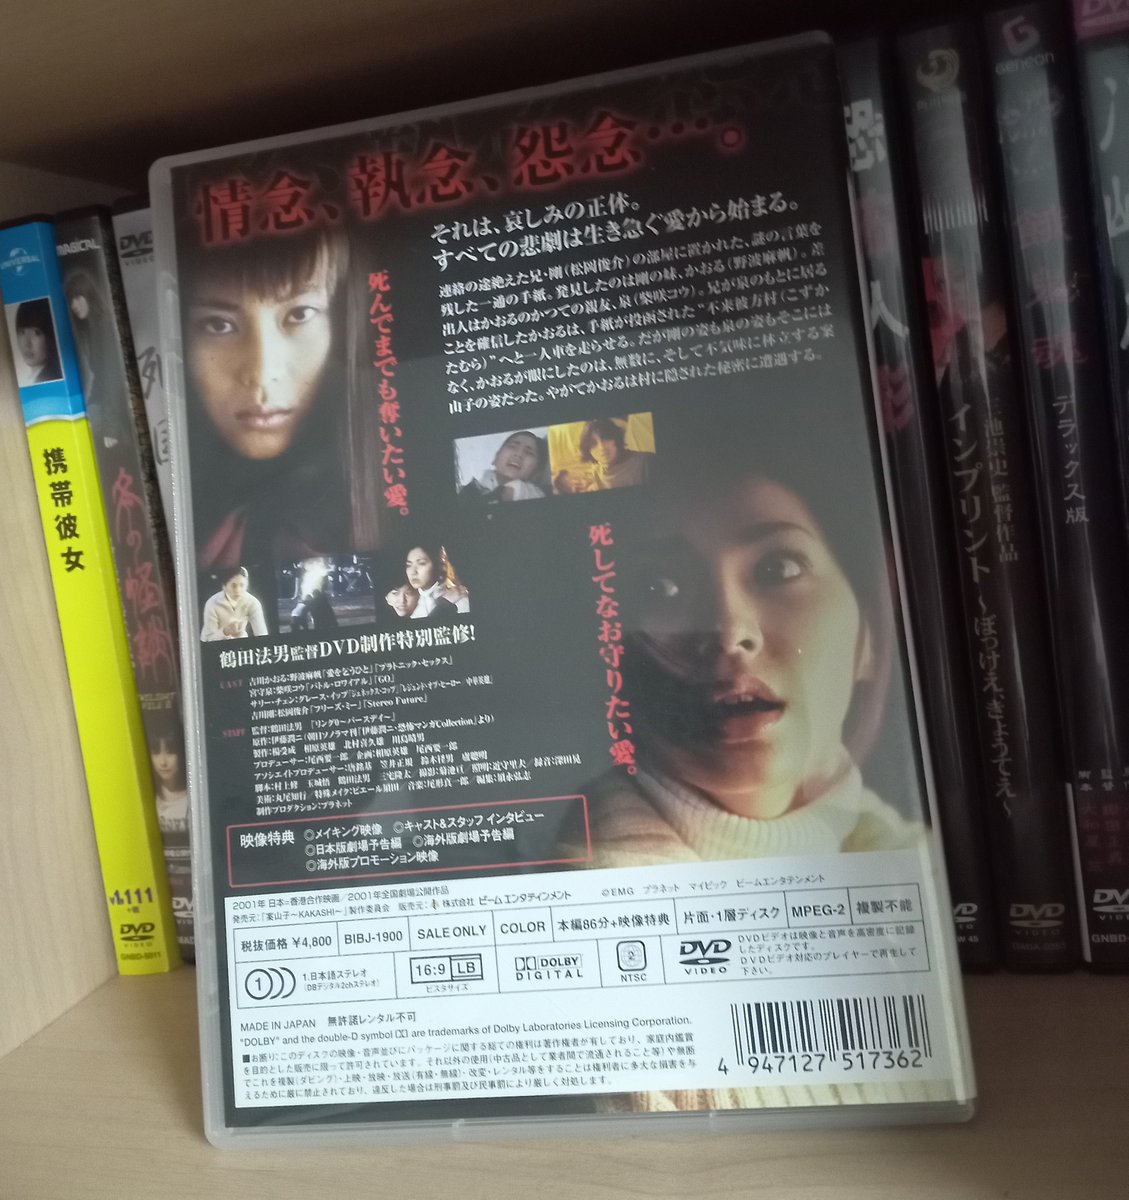 実写映画化した伊藤潤二「案山子」は、柴咲コウが化物案山子役のかなり原作をアレンジした作品で楽しいです。